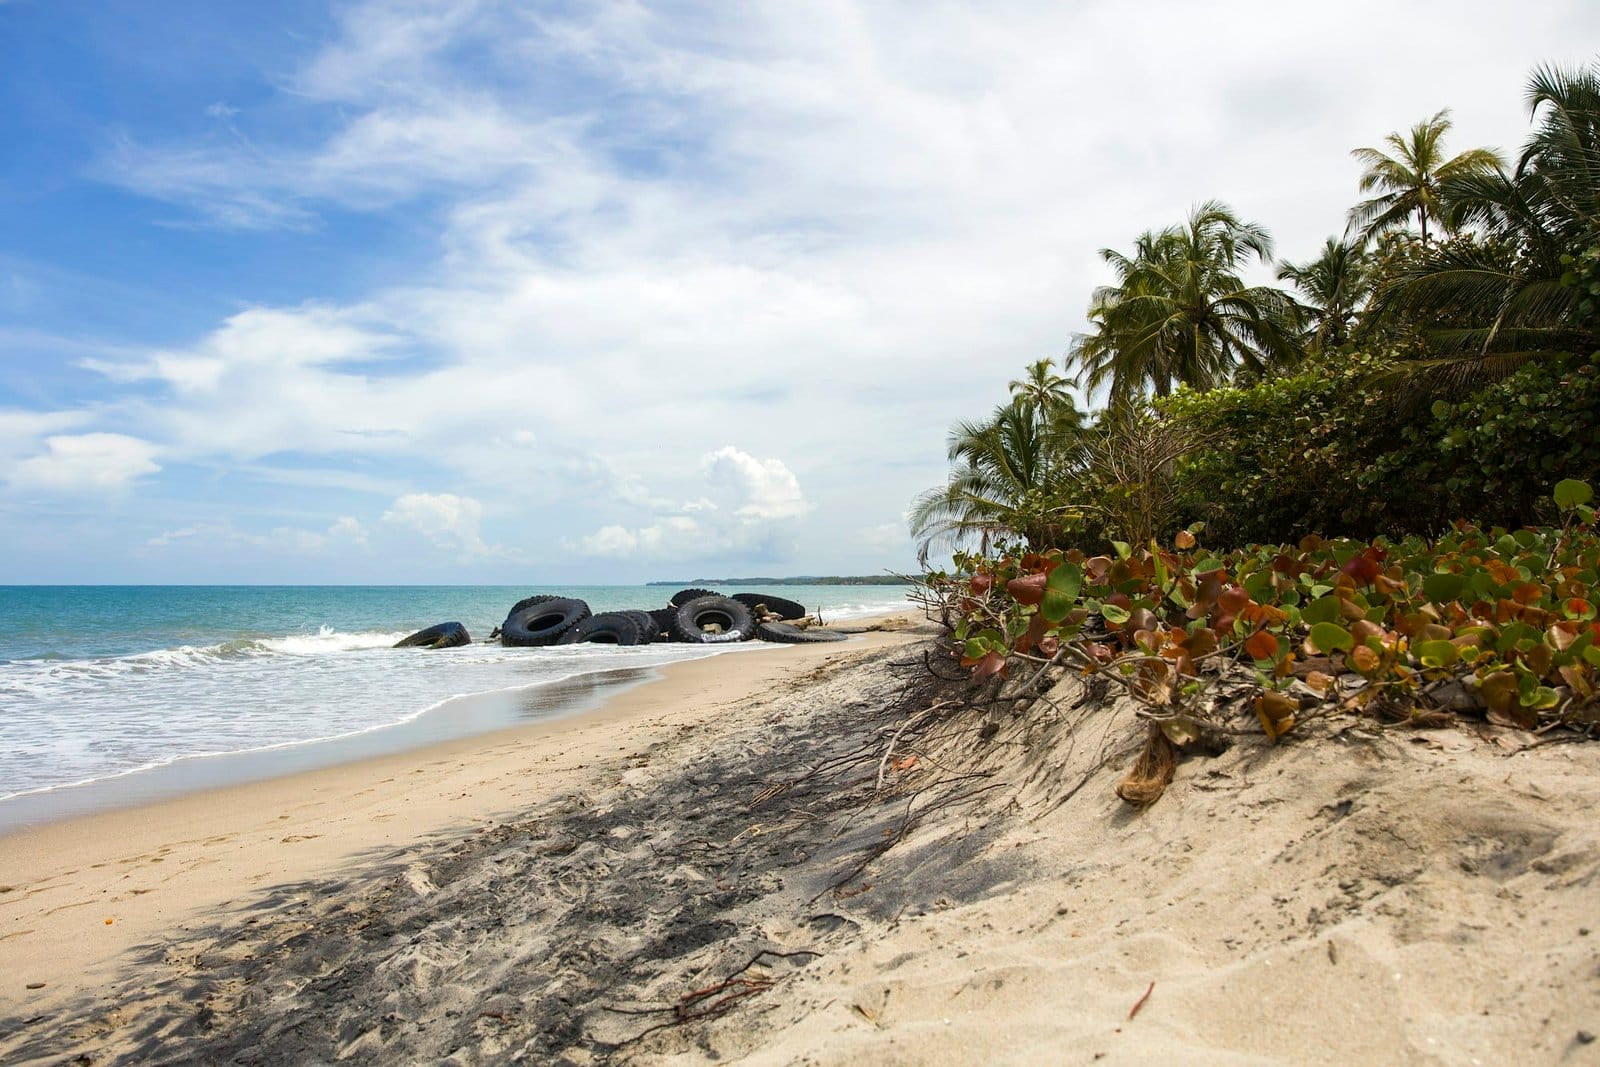 Tires on the tropical sandy beach